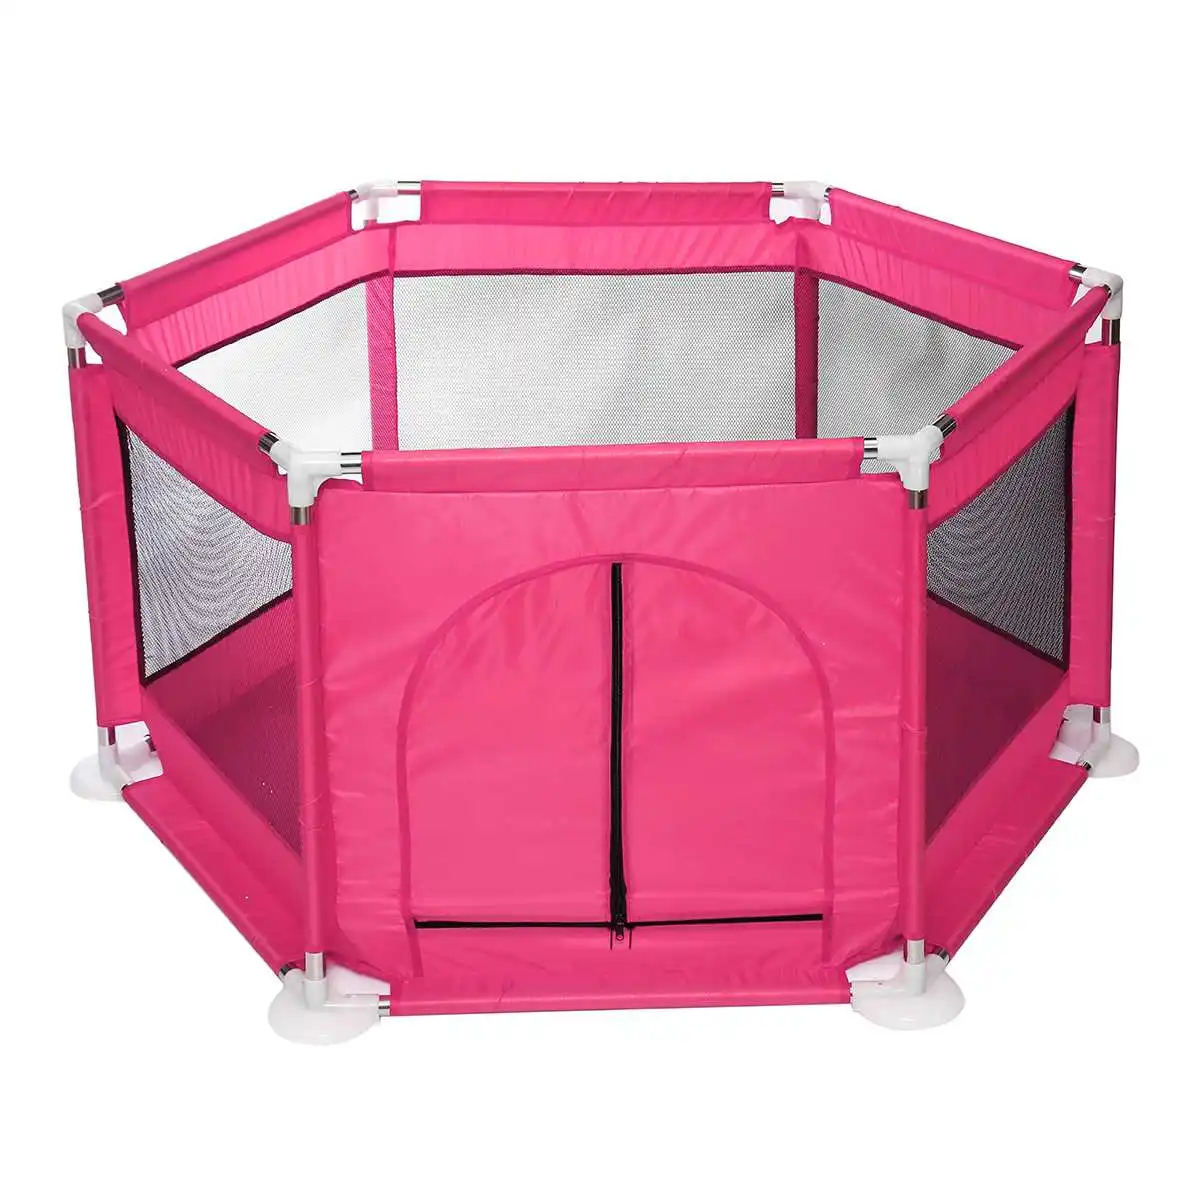 Ограждение для детского Манежа, складной защитный барьер для детей в возрасте до года, детский манеж, ткань Оксфорд, Игровая палатка, барьер для младенцев - Цвет: Розовый